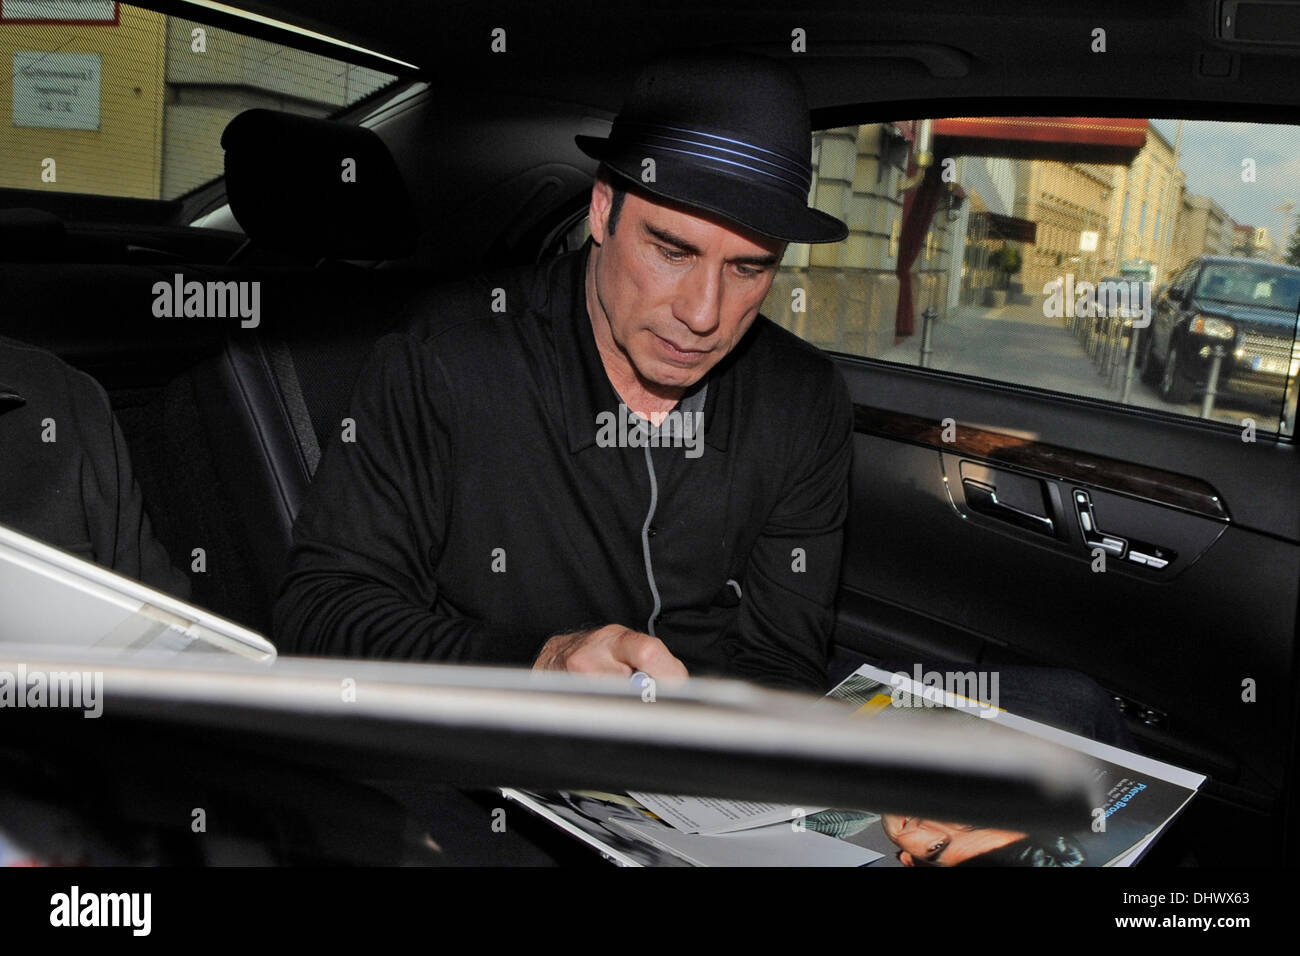 John Travolta de signer des autographes à l'extérieur de son hôtel. Berlin, Allemagne - 17.09.2012 Banque D'Images